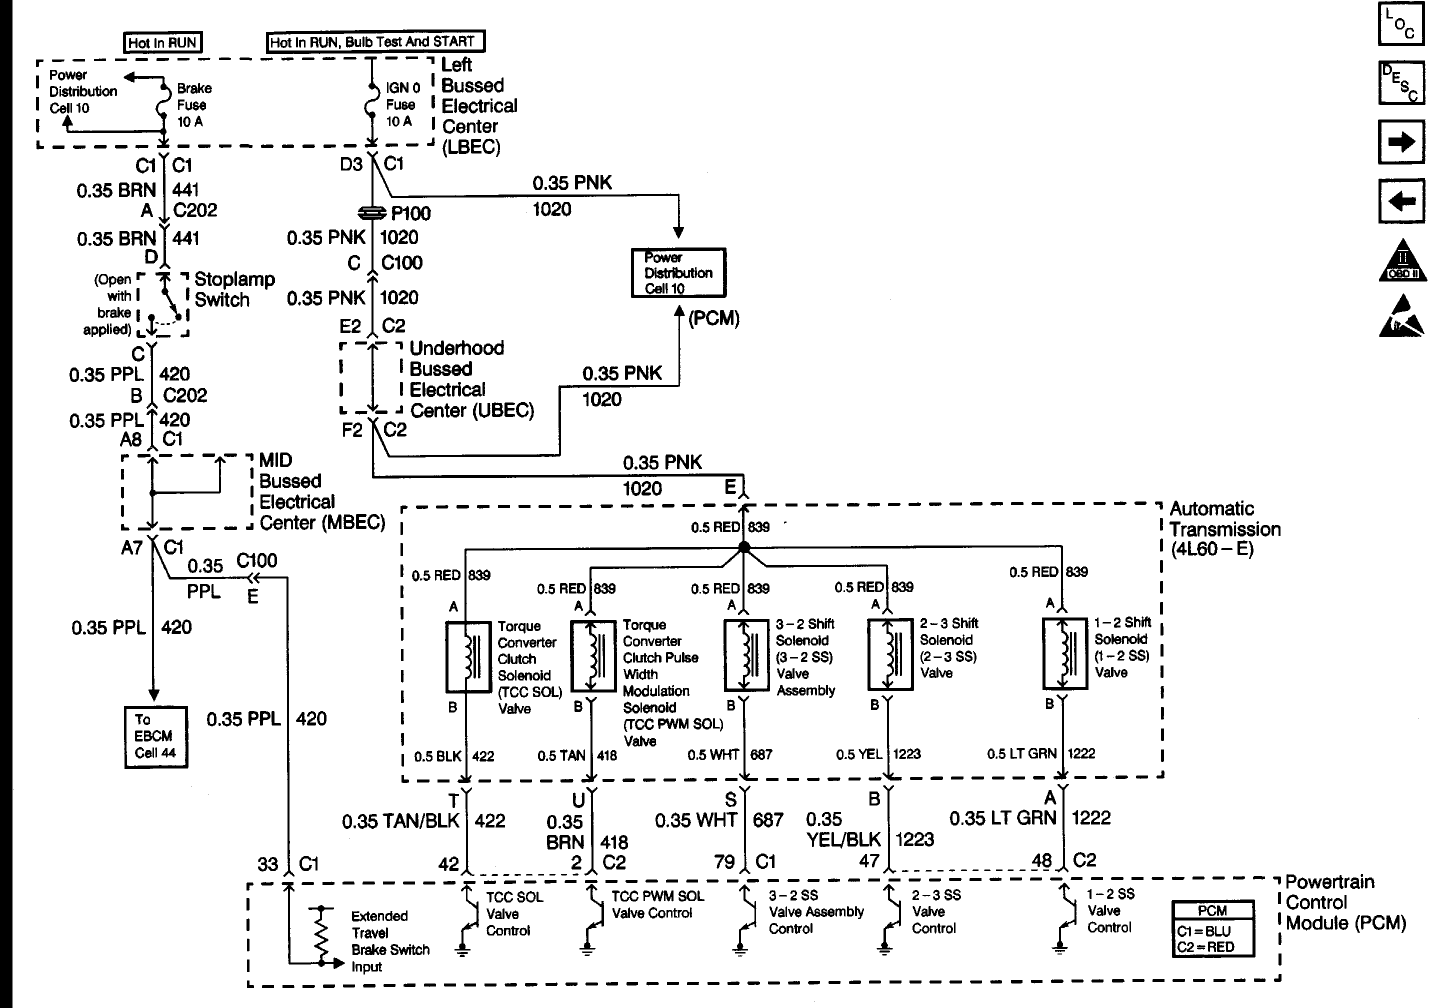 Wiring Schematic For 1999 Gmc Sierra, Gmc Sierra Wiring Diagrams